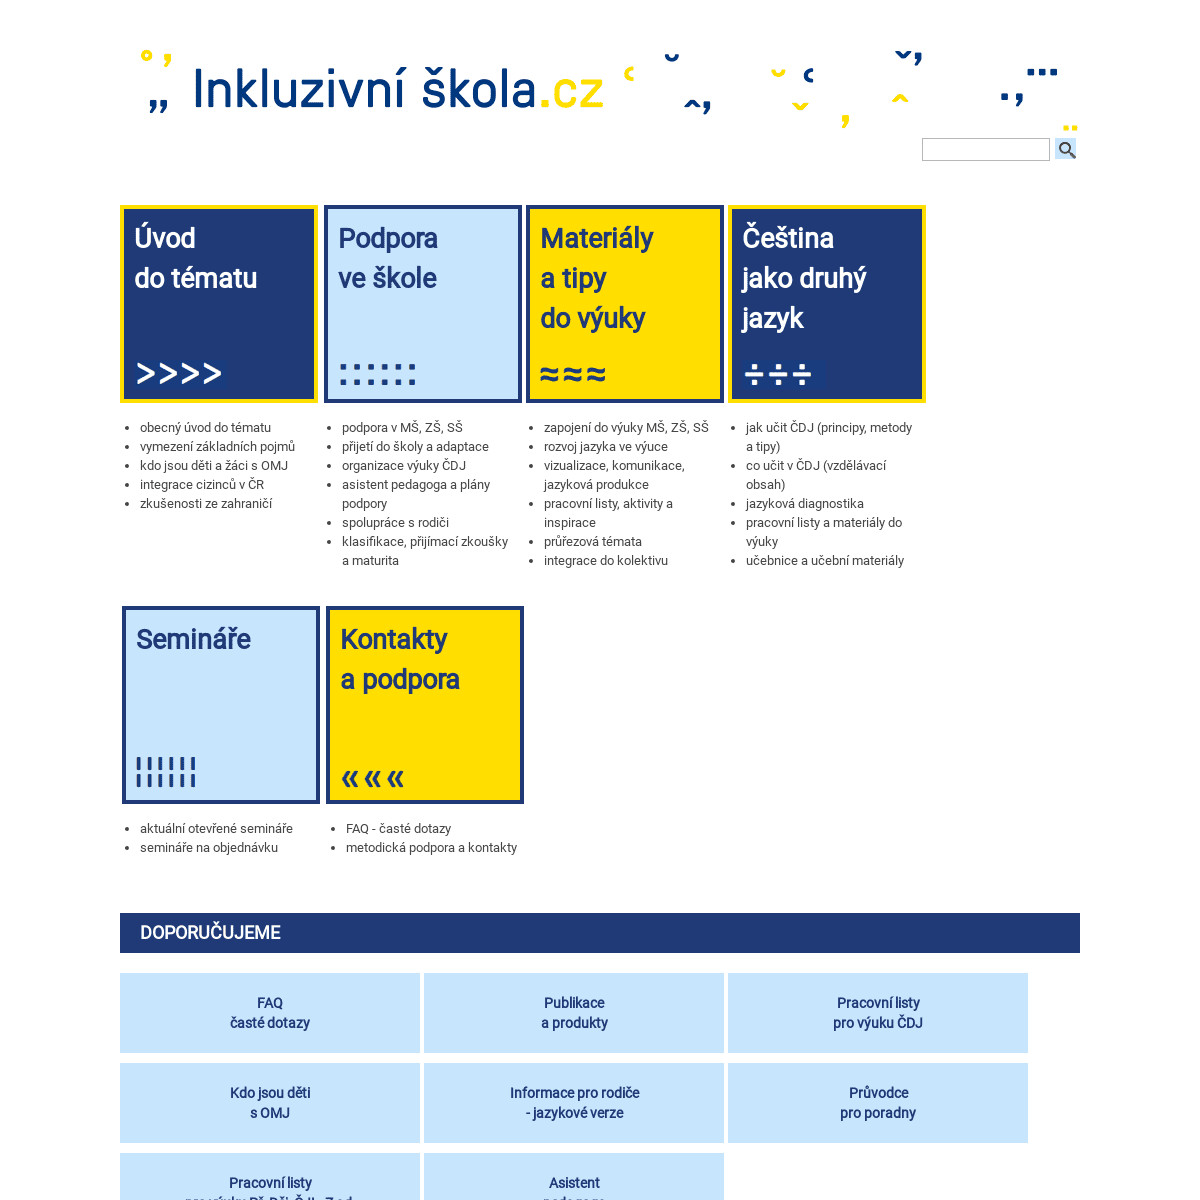 A complete backup of inkluzivniskola.cz